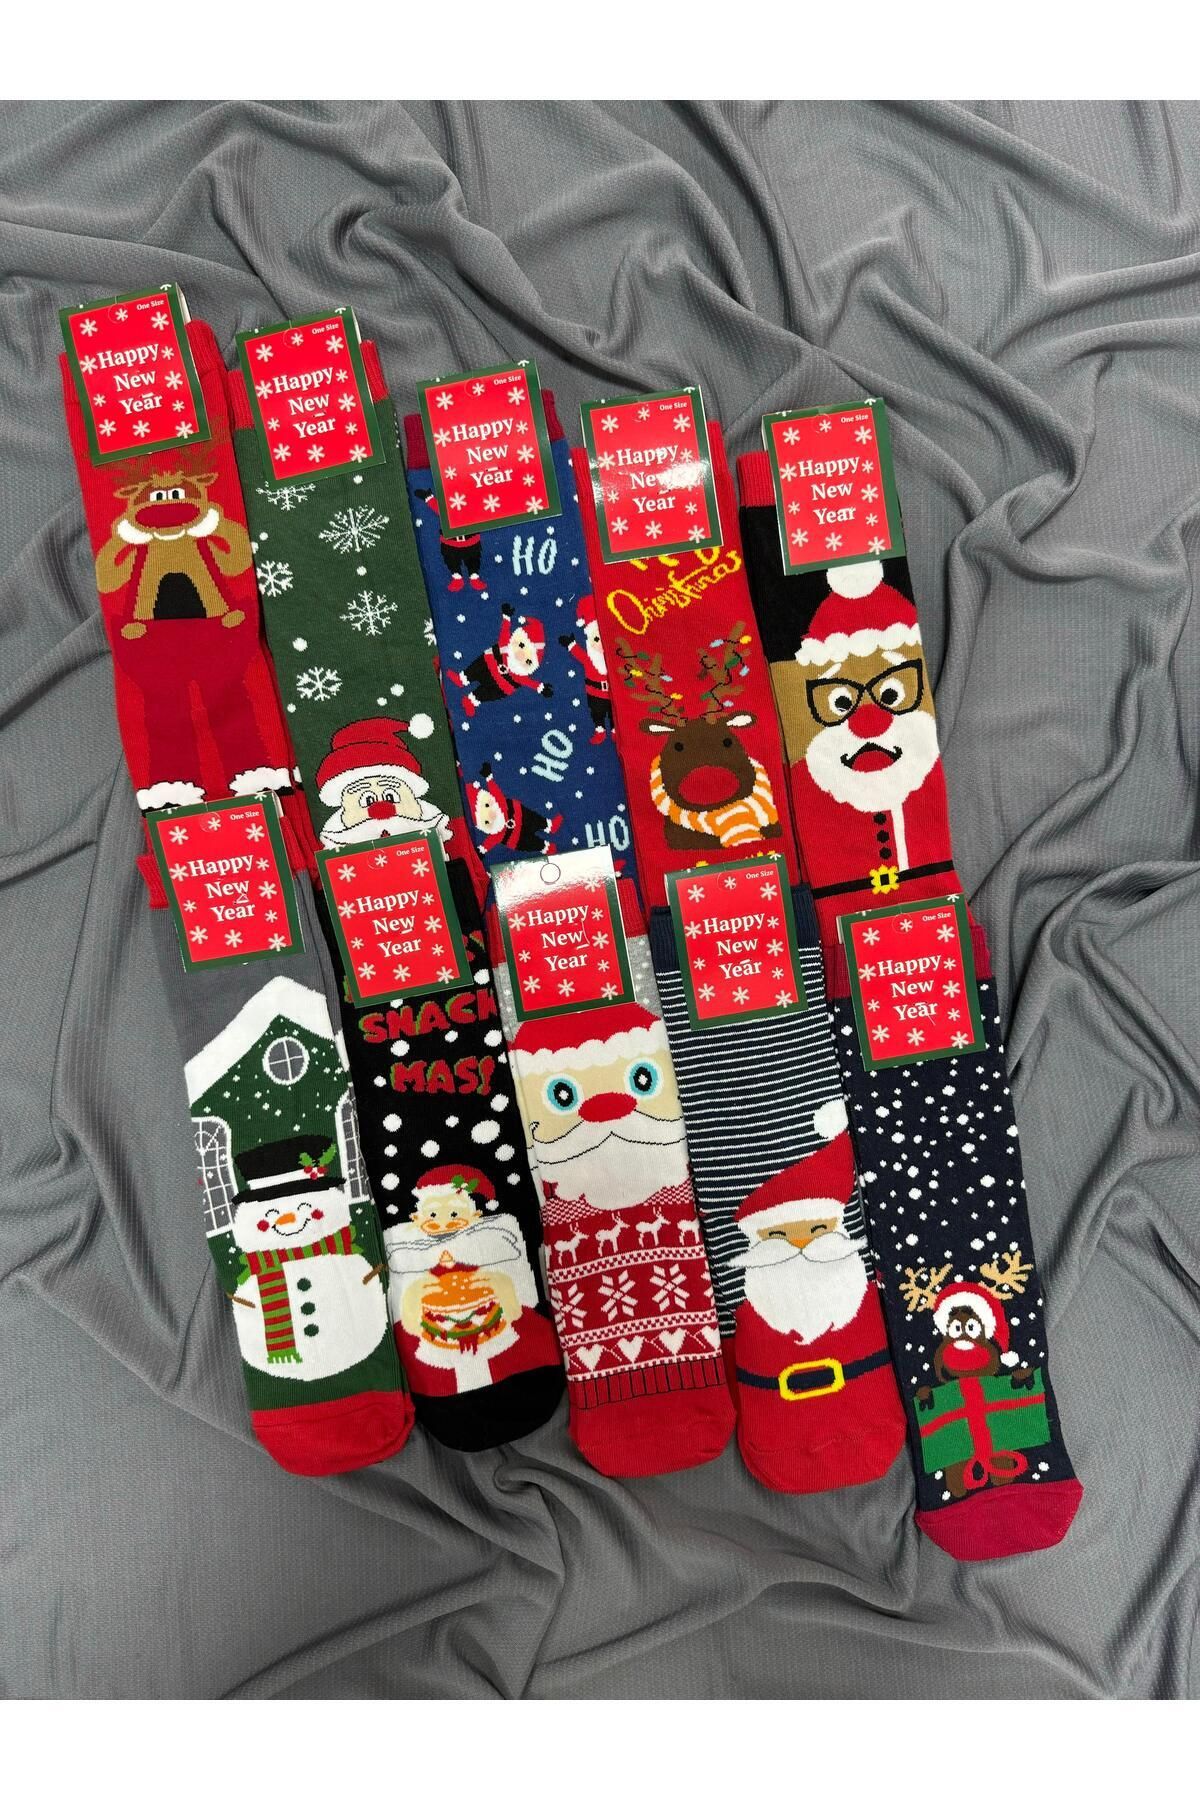 KRC & GLOBAL TEKSTİL Yılbaşı - Noel - Christmas Temalı Unisex Çorapları 10'Lu